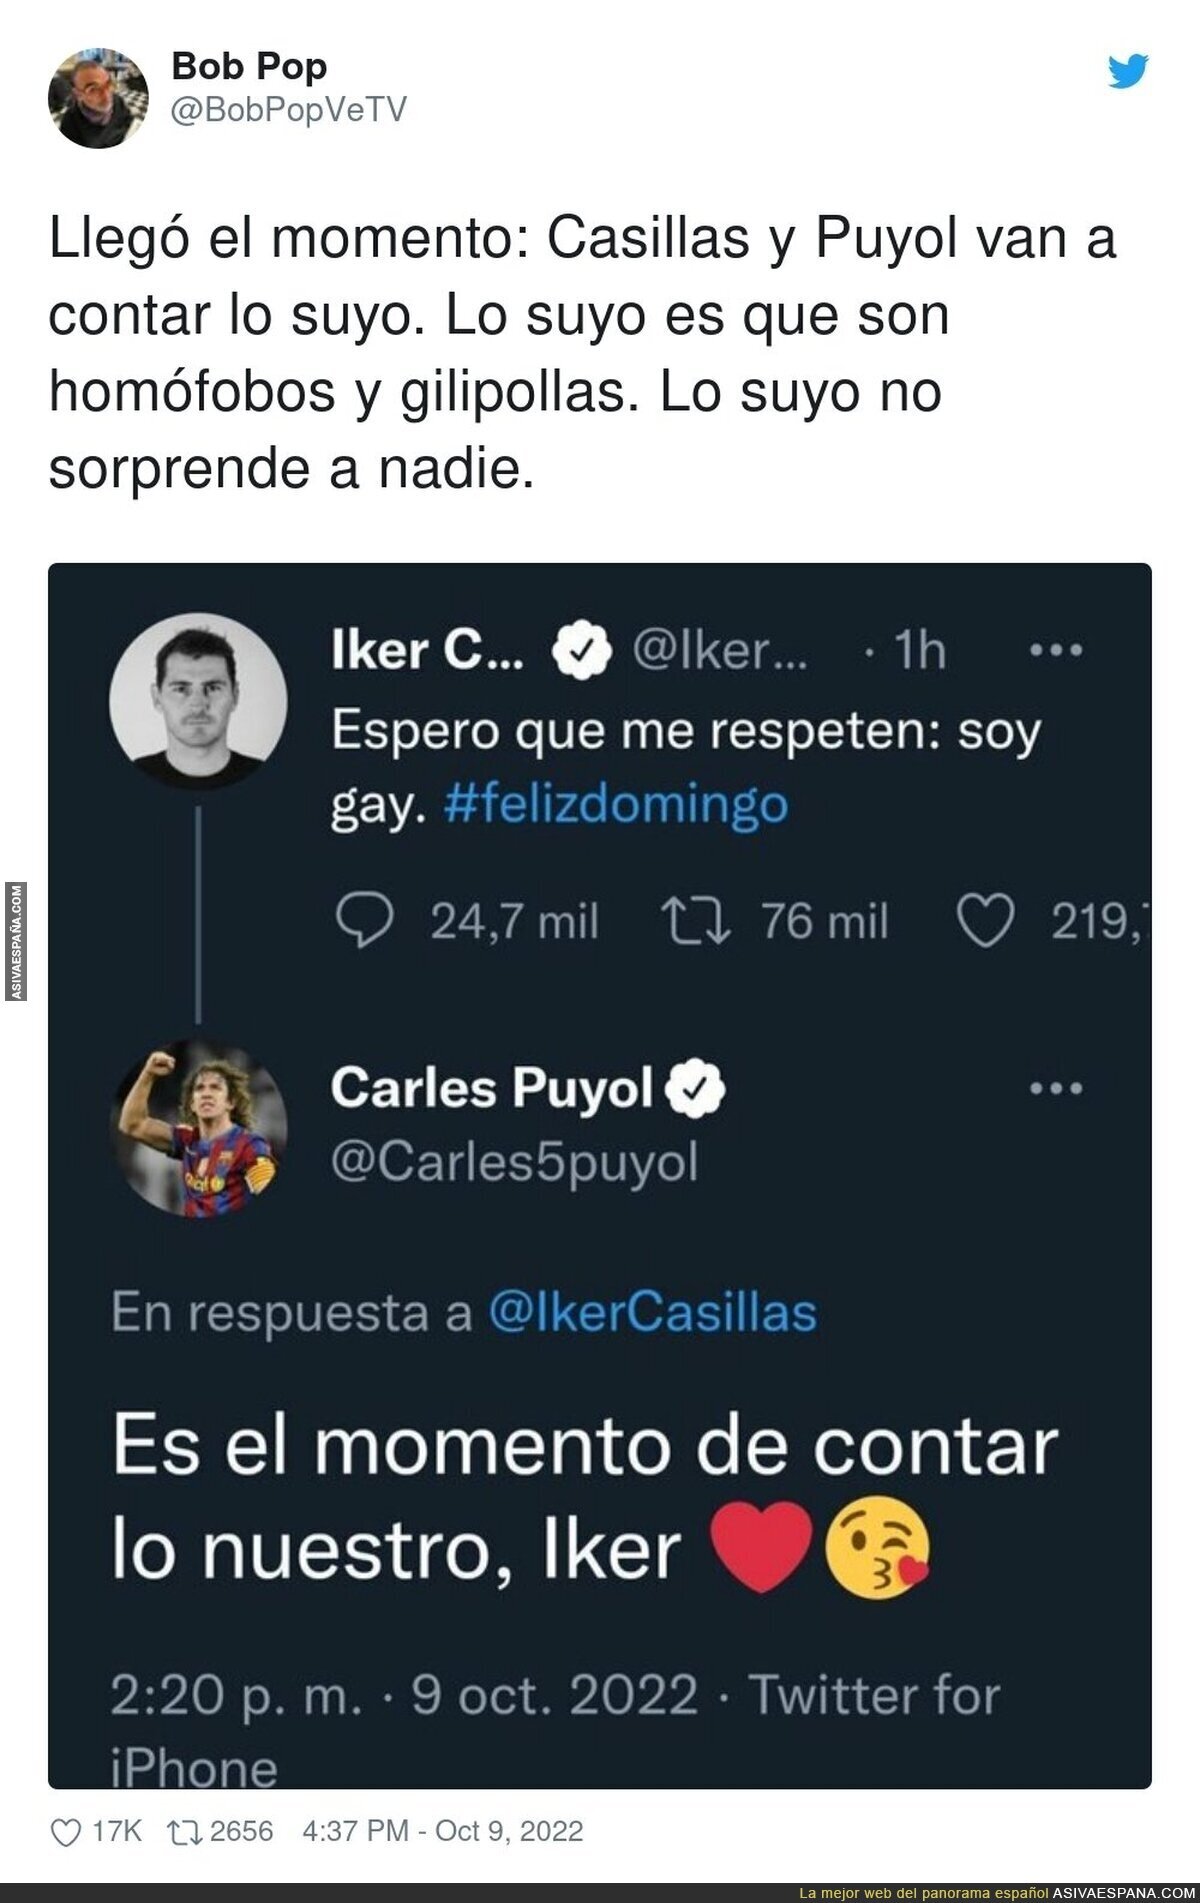 La realidad de Casillas y Puyol